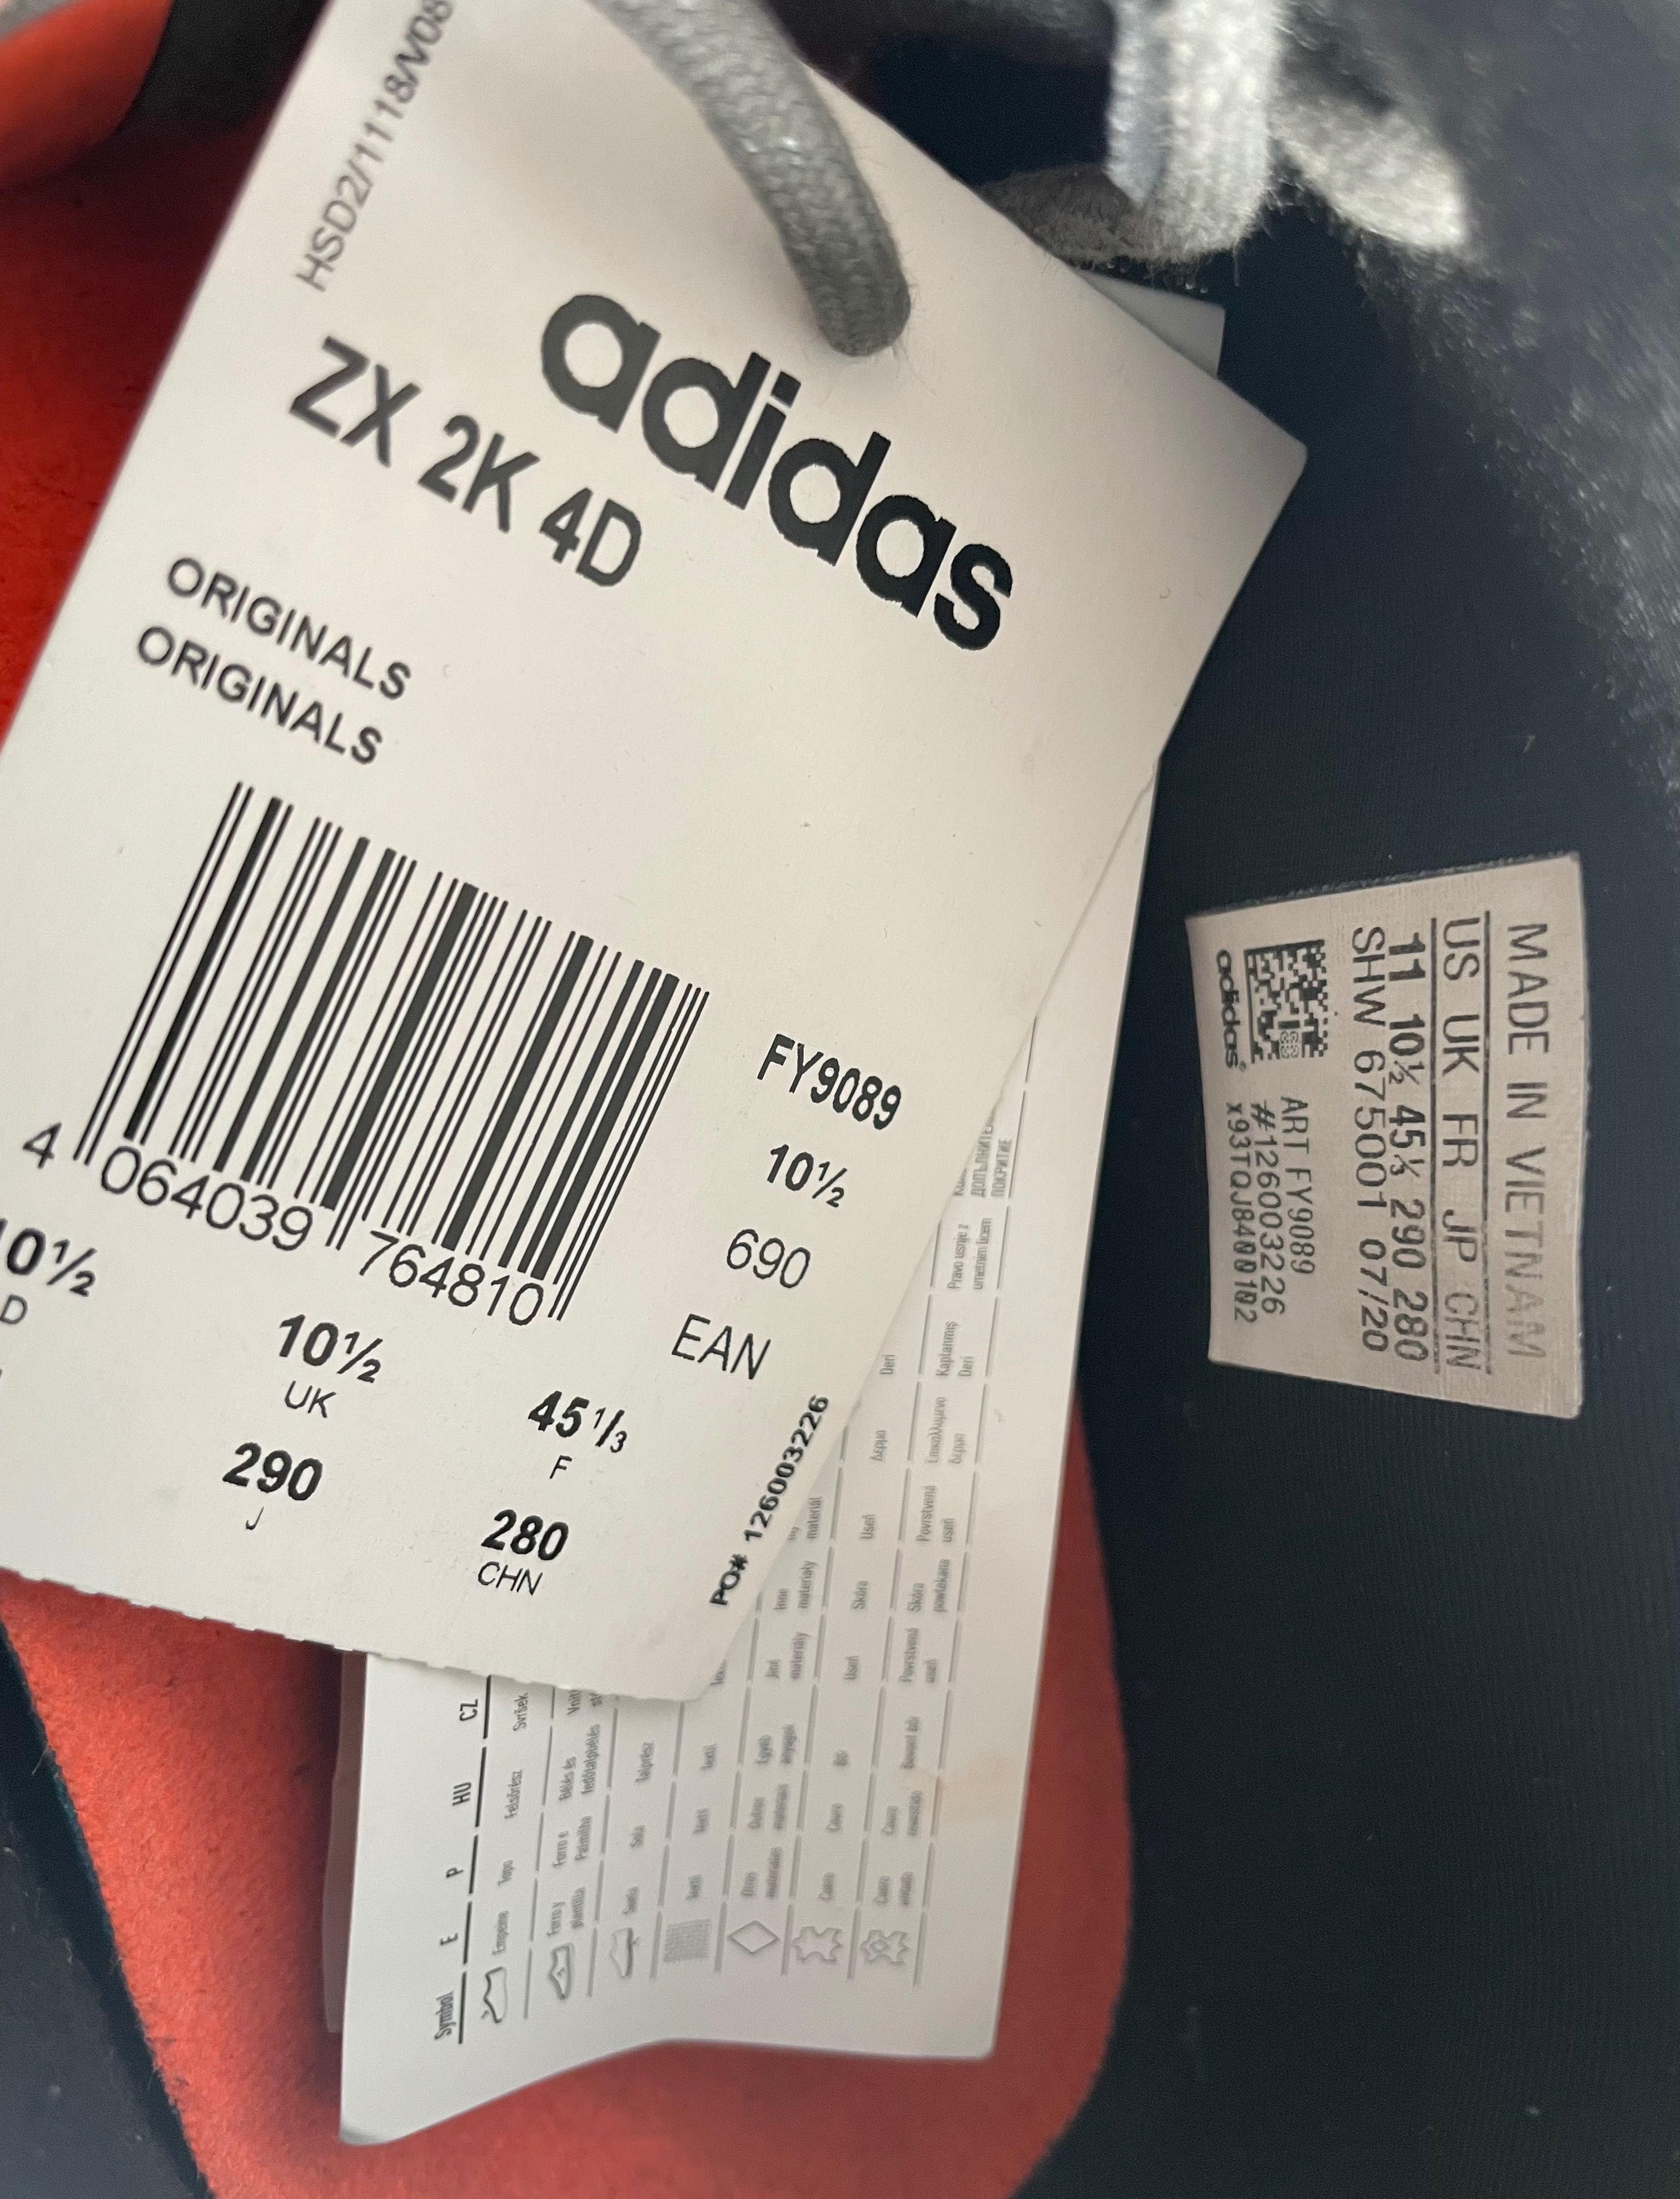 Adidas -48 % ZX 2K 4D Originals rozm. 45 1/3 grey.